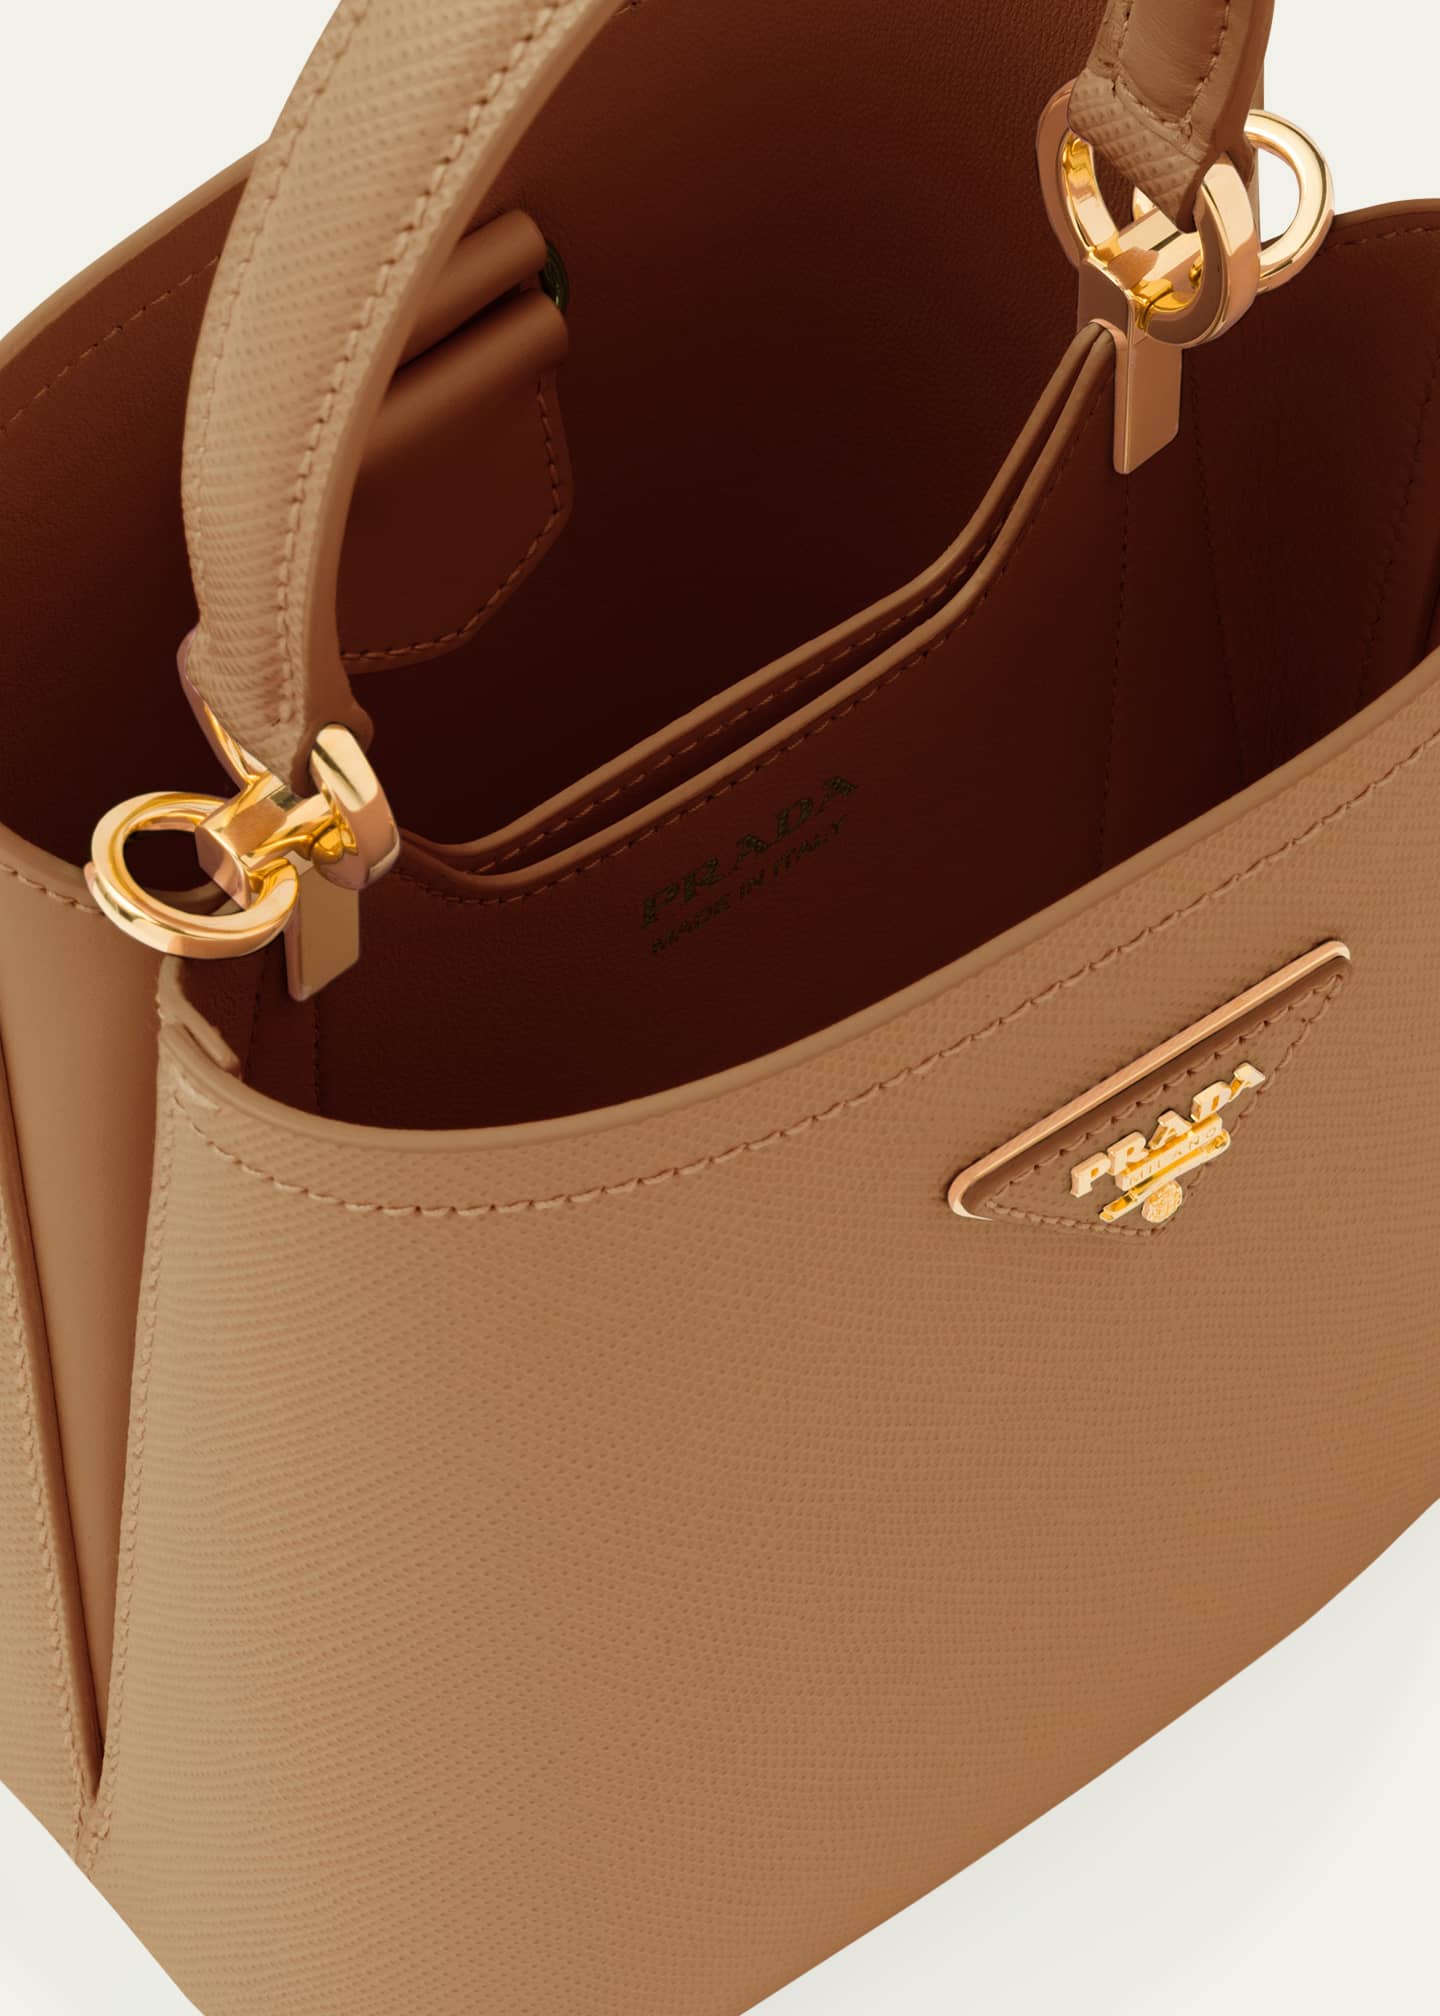 Prada Small Saffiano Leather Prada Panier Bag Top Handle